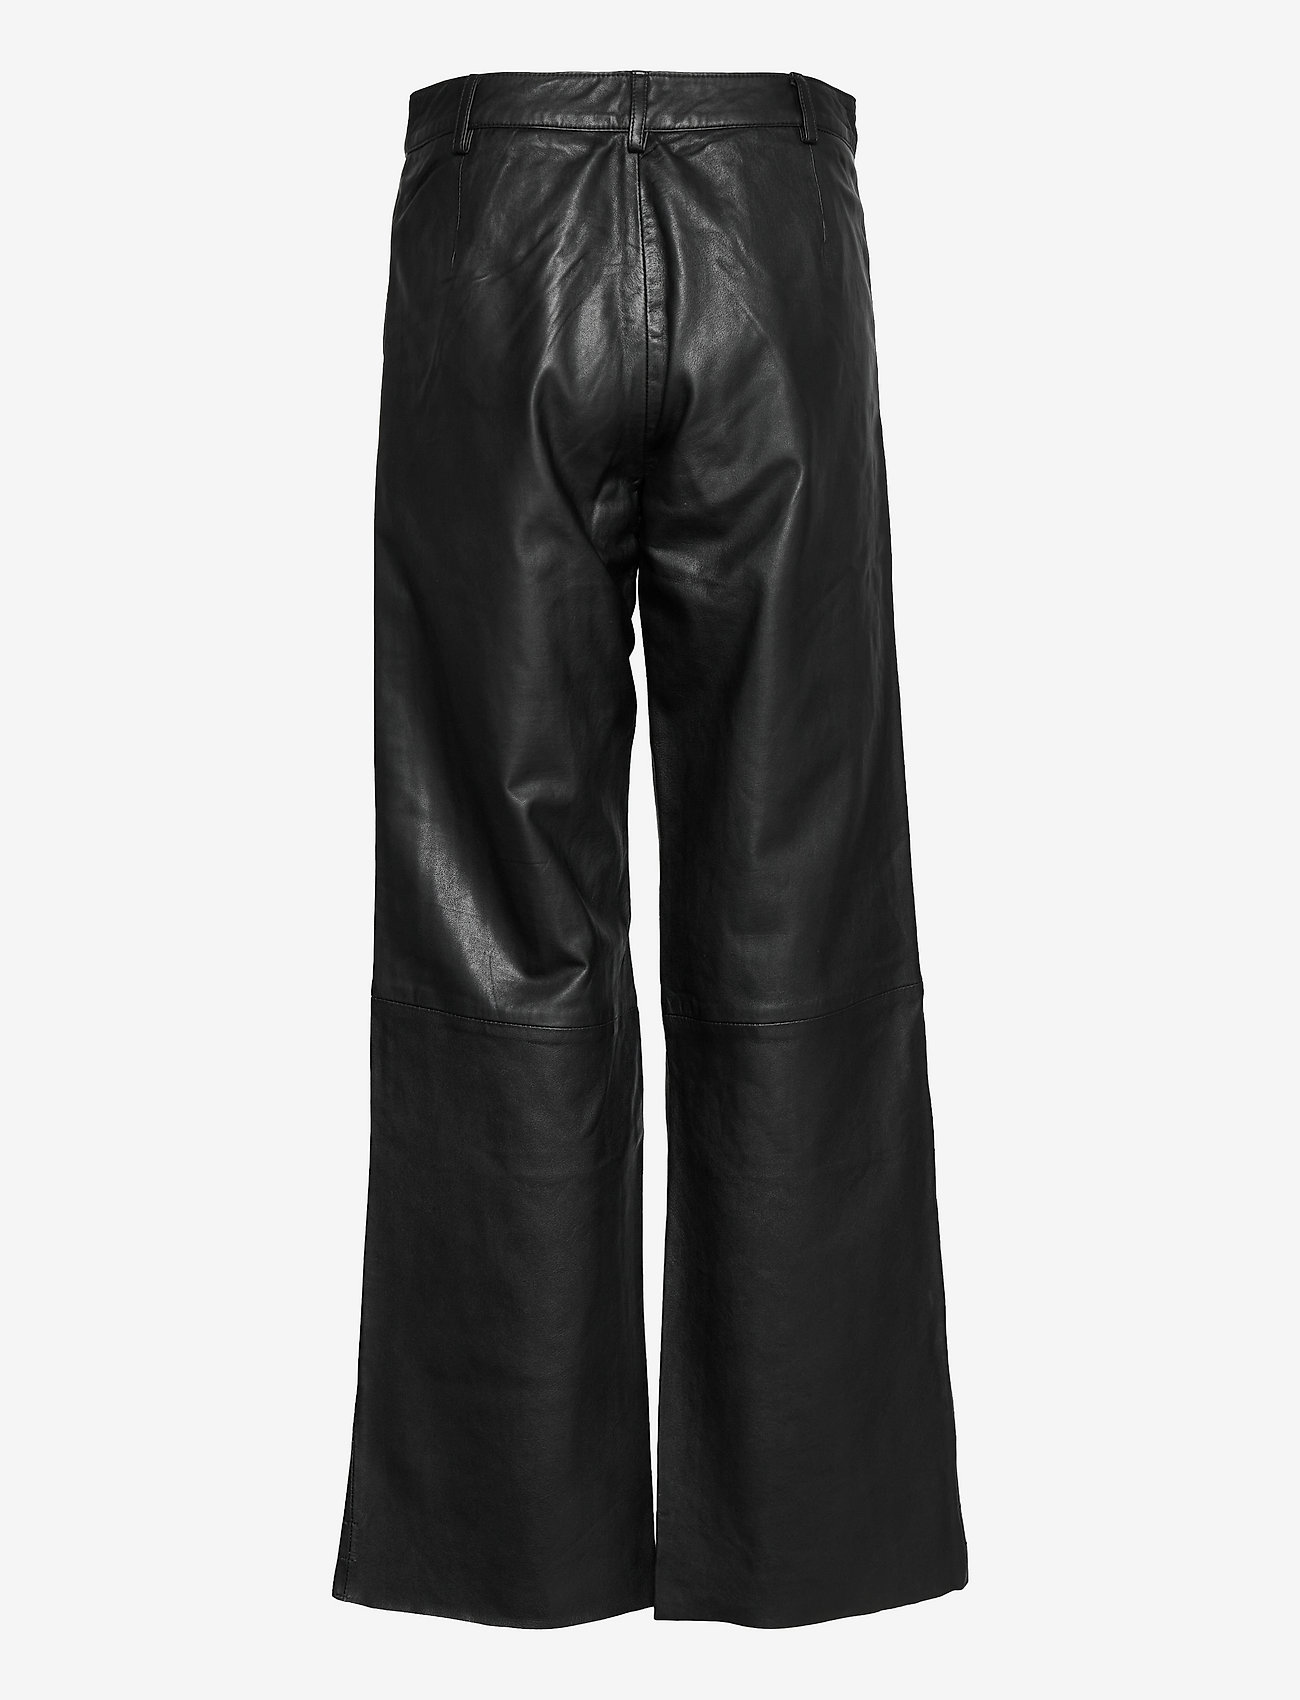 DEPECHE - Pants - odzież imprezowa w cenach outletowych - 099 black (nero) - 1